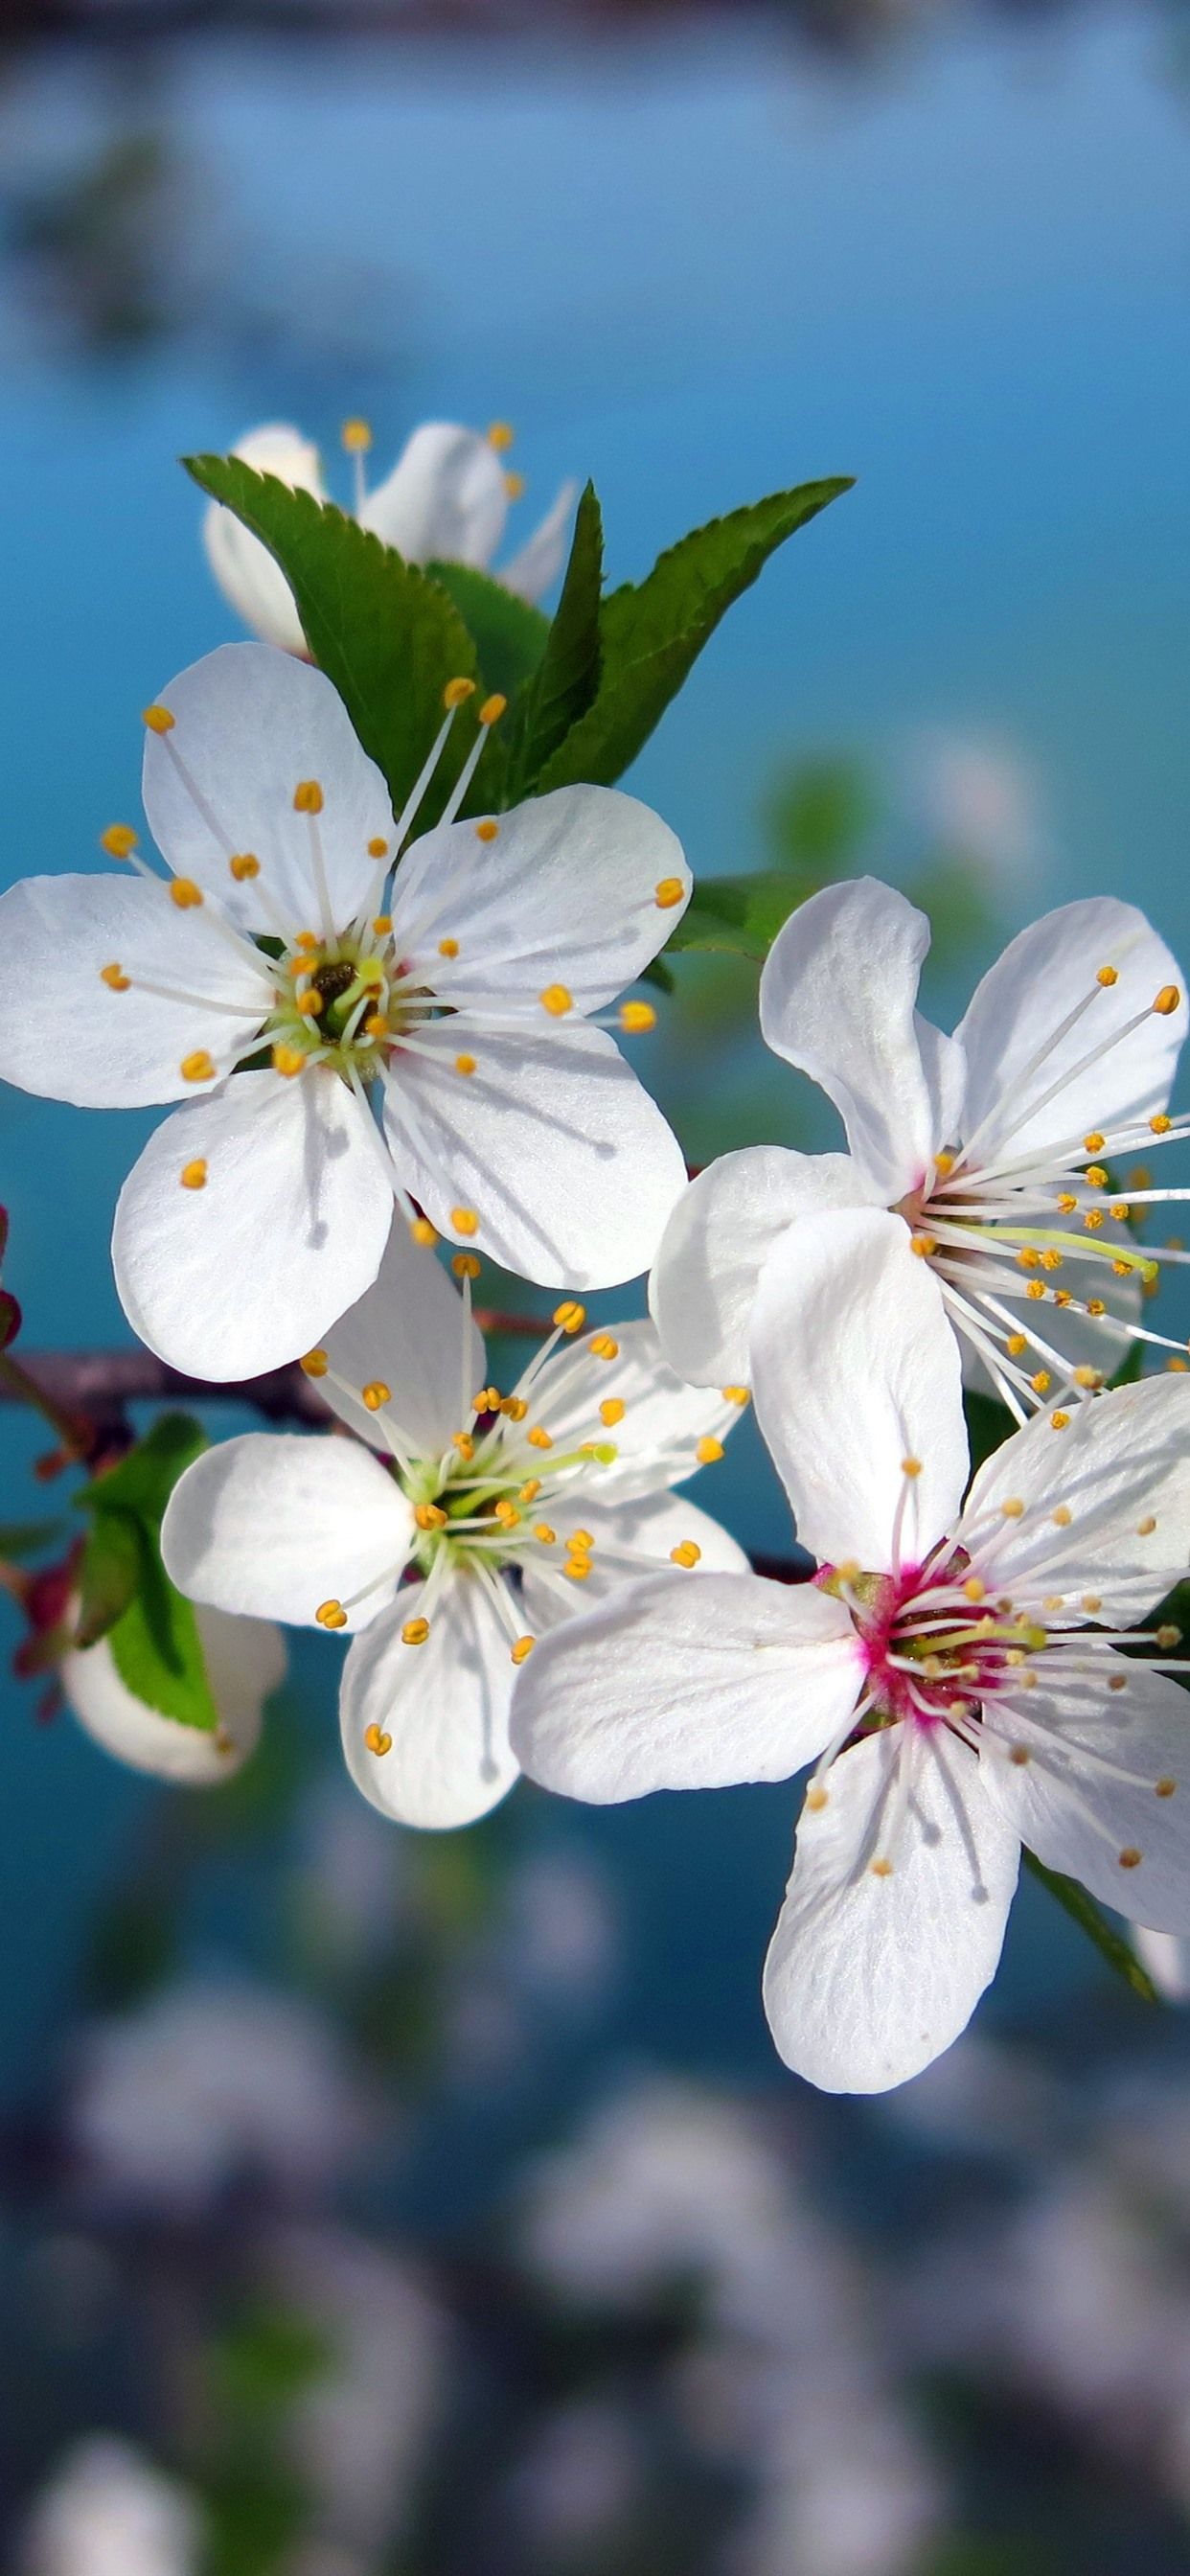 Wallpaper White cherry flowers bloom, spring 3840x2160 UHD 4K